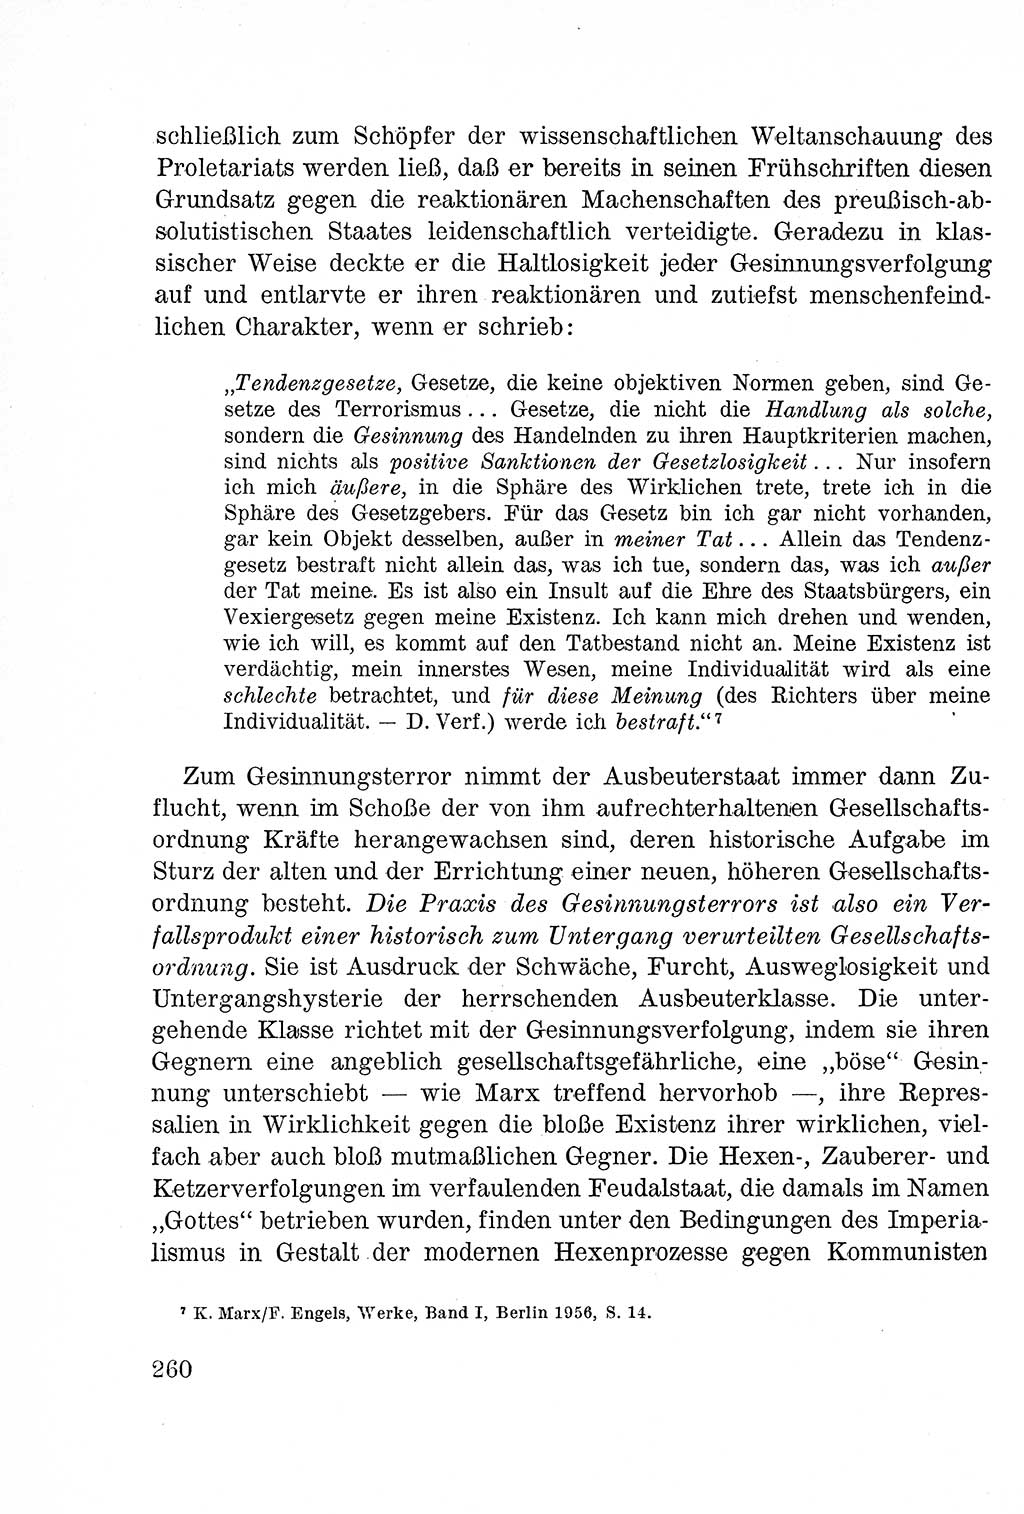 Lehrbuch des Strafrechts der Deutschen Demokratischen Republik (DDR), Allgemeiner Teil 1957, Seite 260 (Lb. Strafr. DDR AT 1957, S. 260)